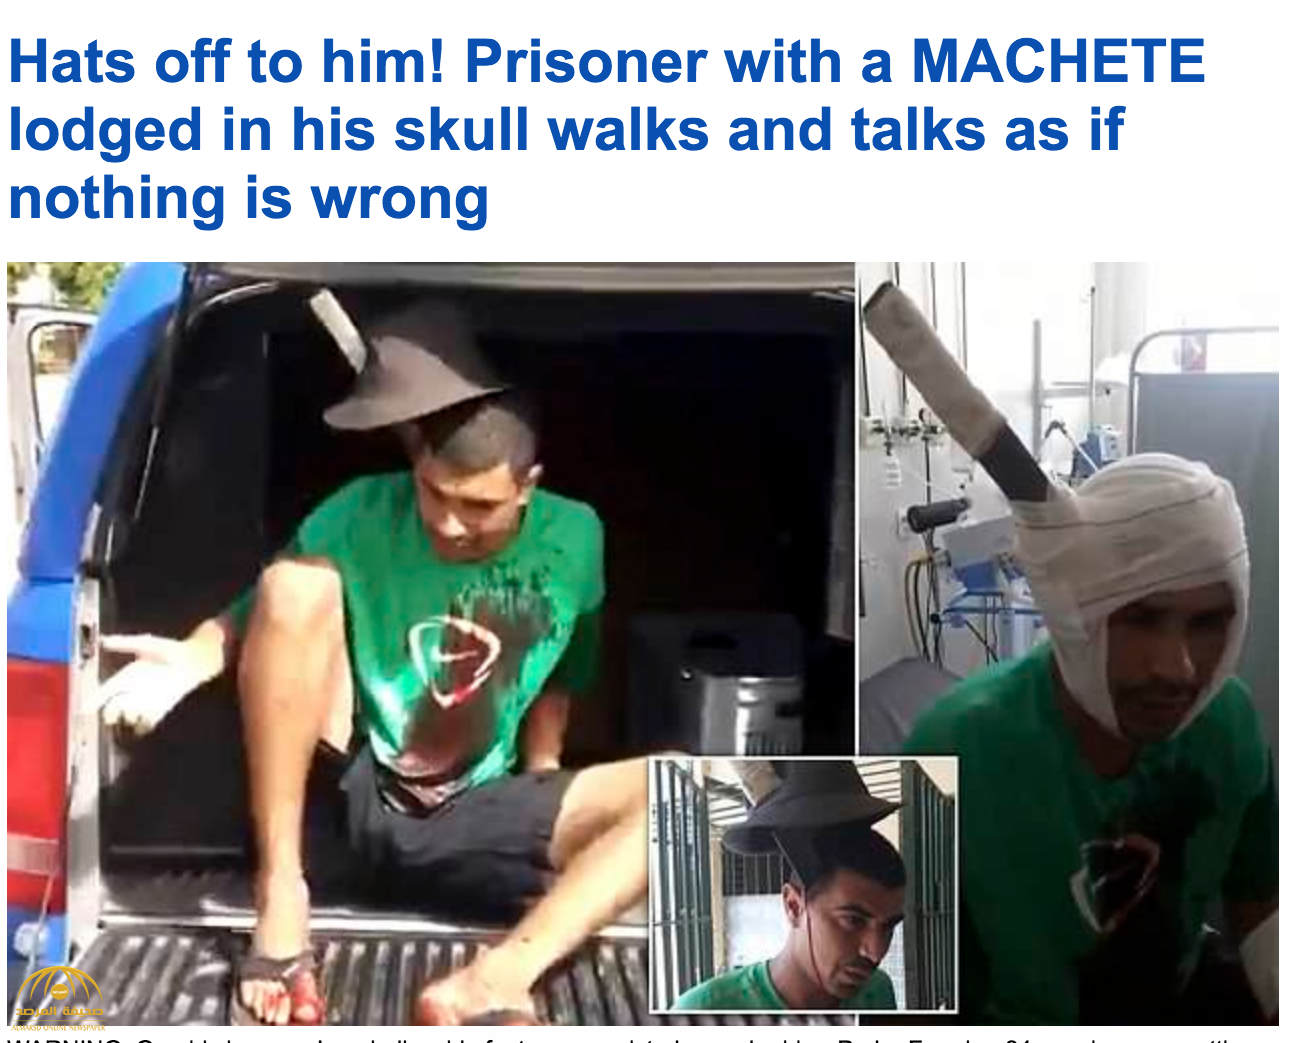 شاهد .. حالة غريبة.. رجل يتحدث وحديدة ضخمة مغروسة داخل جمجمته في سجن بالبرازيل!